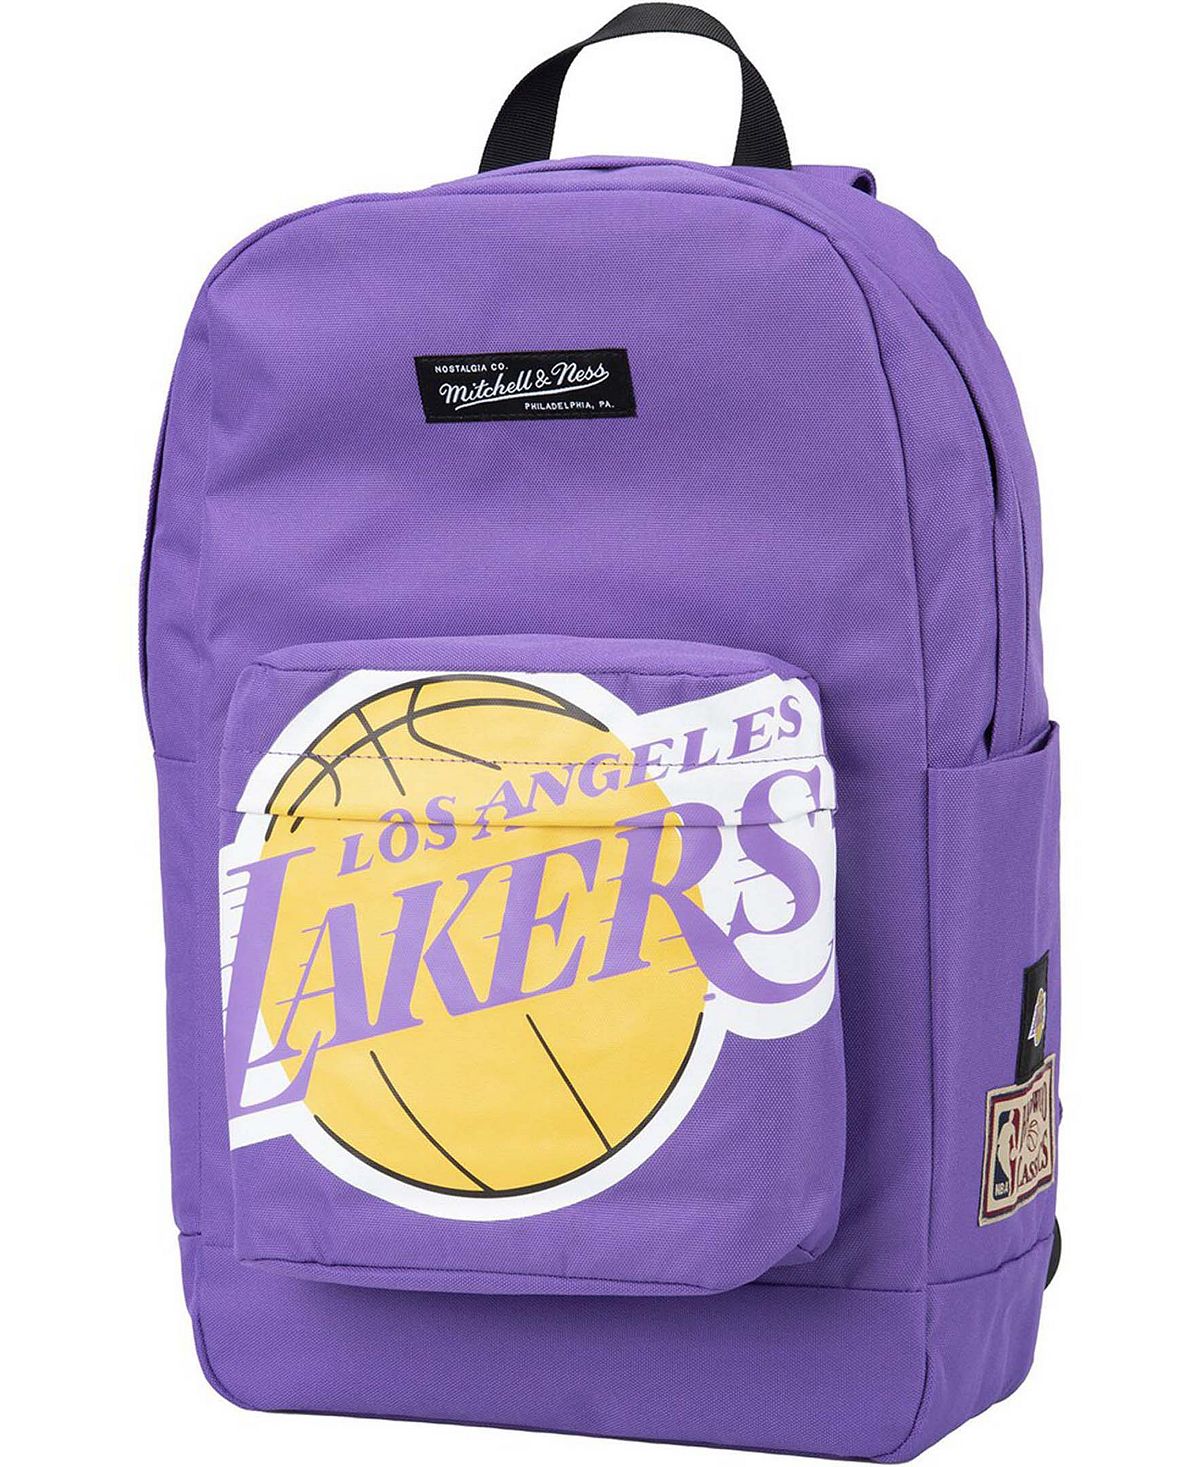 Классический фиолетовый рюкзак Los Angeles Lakers для мужчин и женщин из твердой древесины Mitchell & Ness